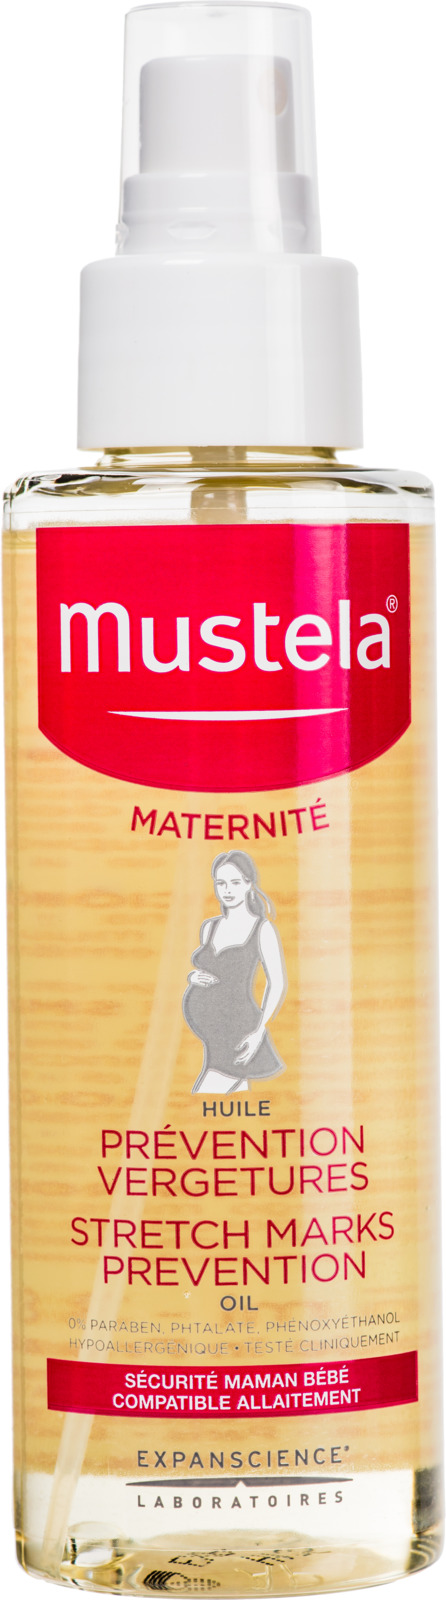 заказать и купить Mustela Maternity Масло для профилактики растяжек 105 мл